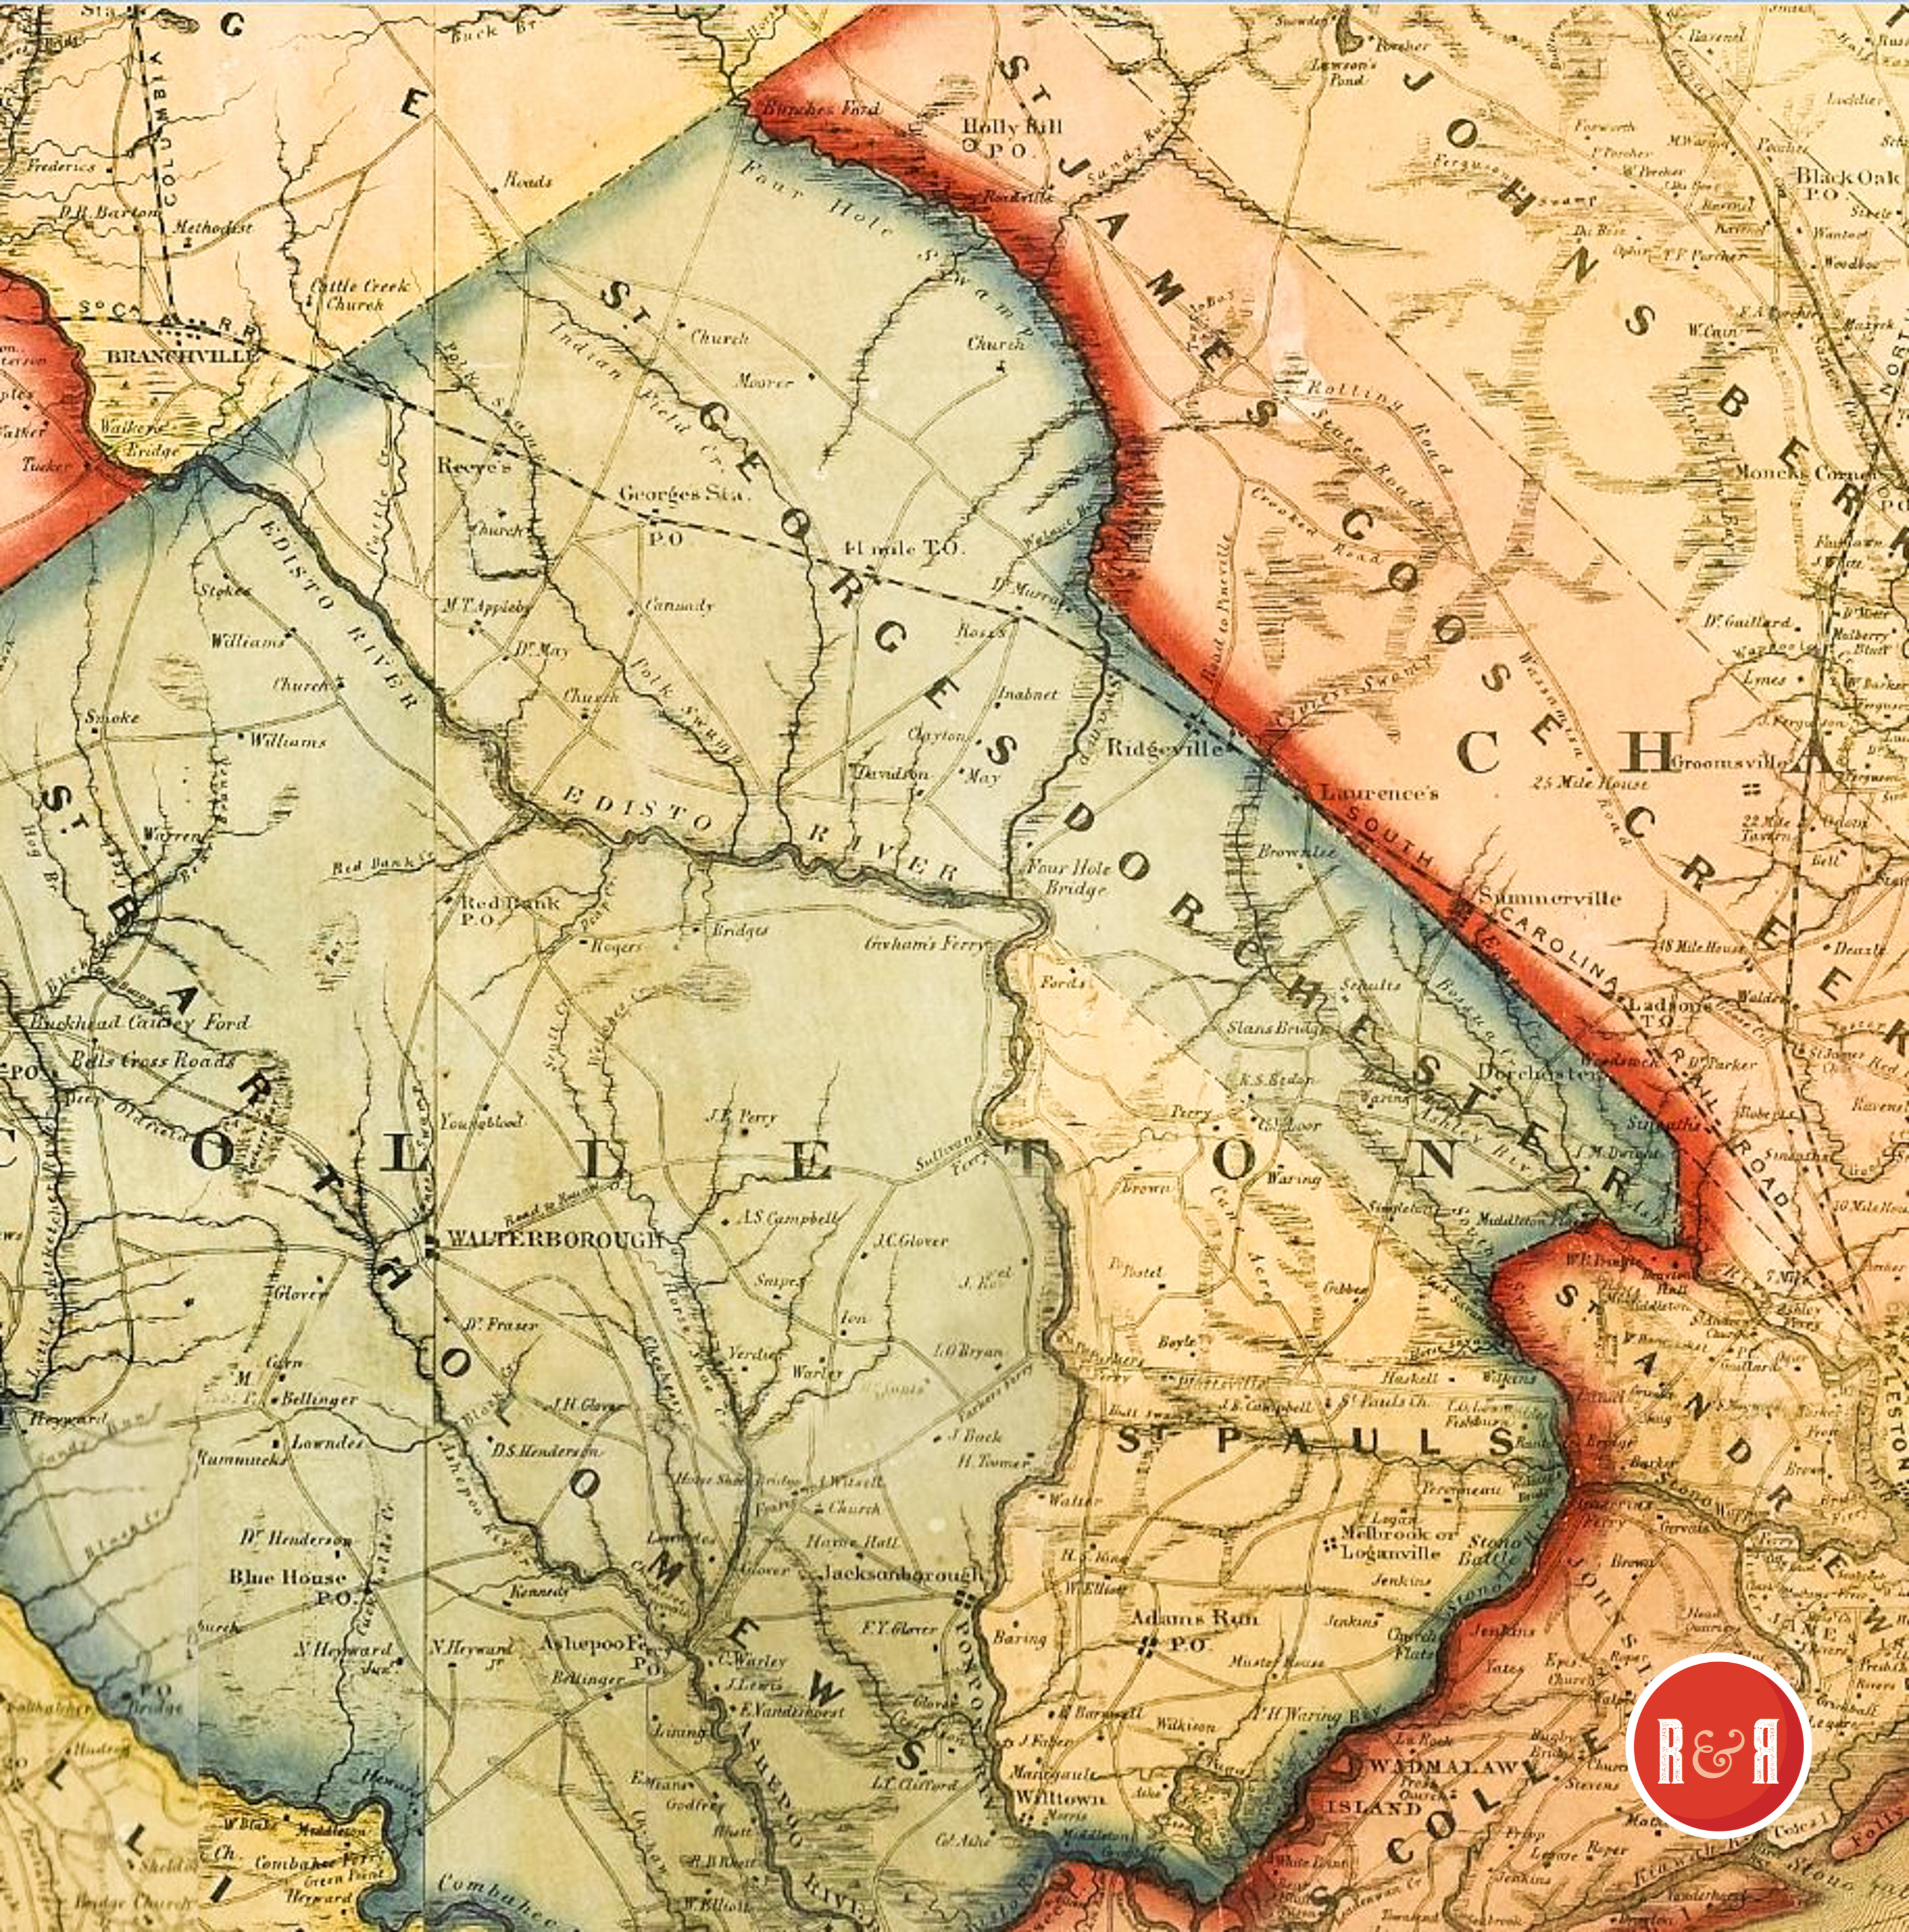 COLTON'S 1854 MAP - ENLARGEMENT